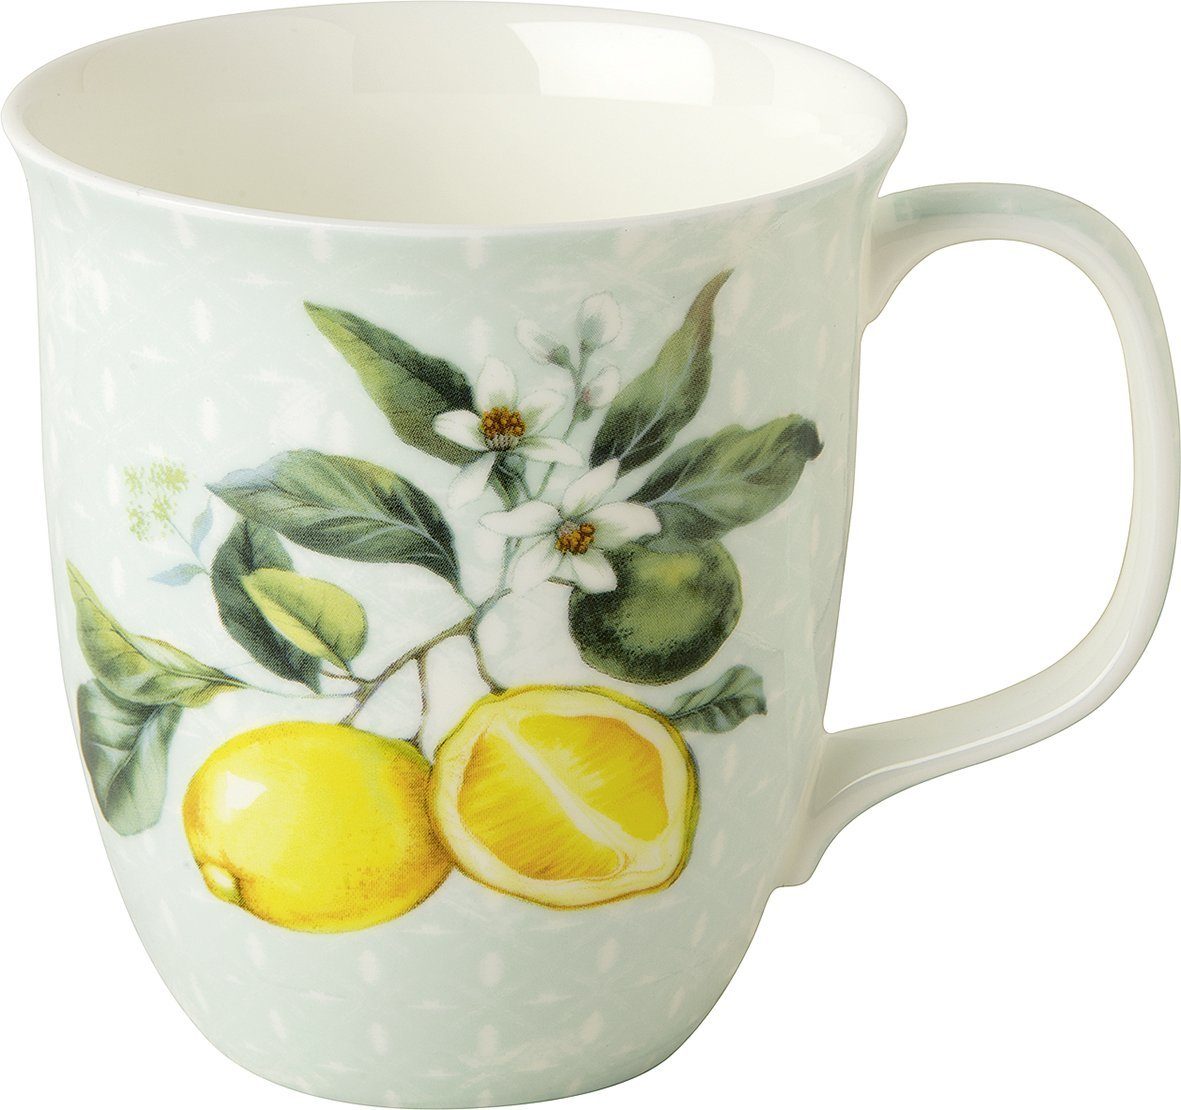 Ihr Ideal Home Range GmbH Tasse Wunderschöner Kaffeebecher Tasse Lemon Wreath Zitronen 9x10cm